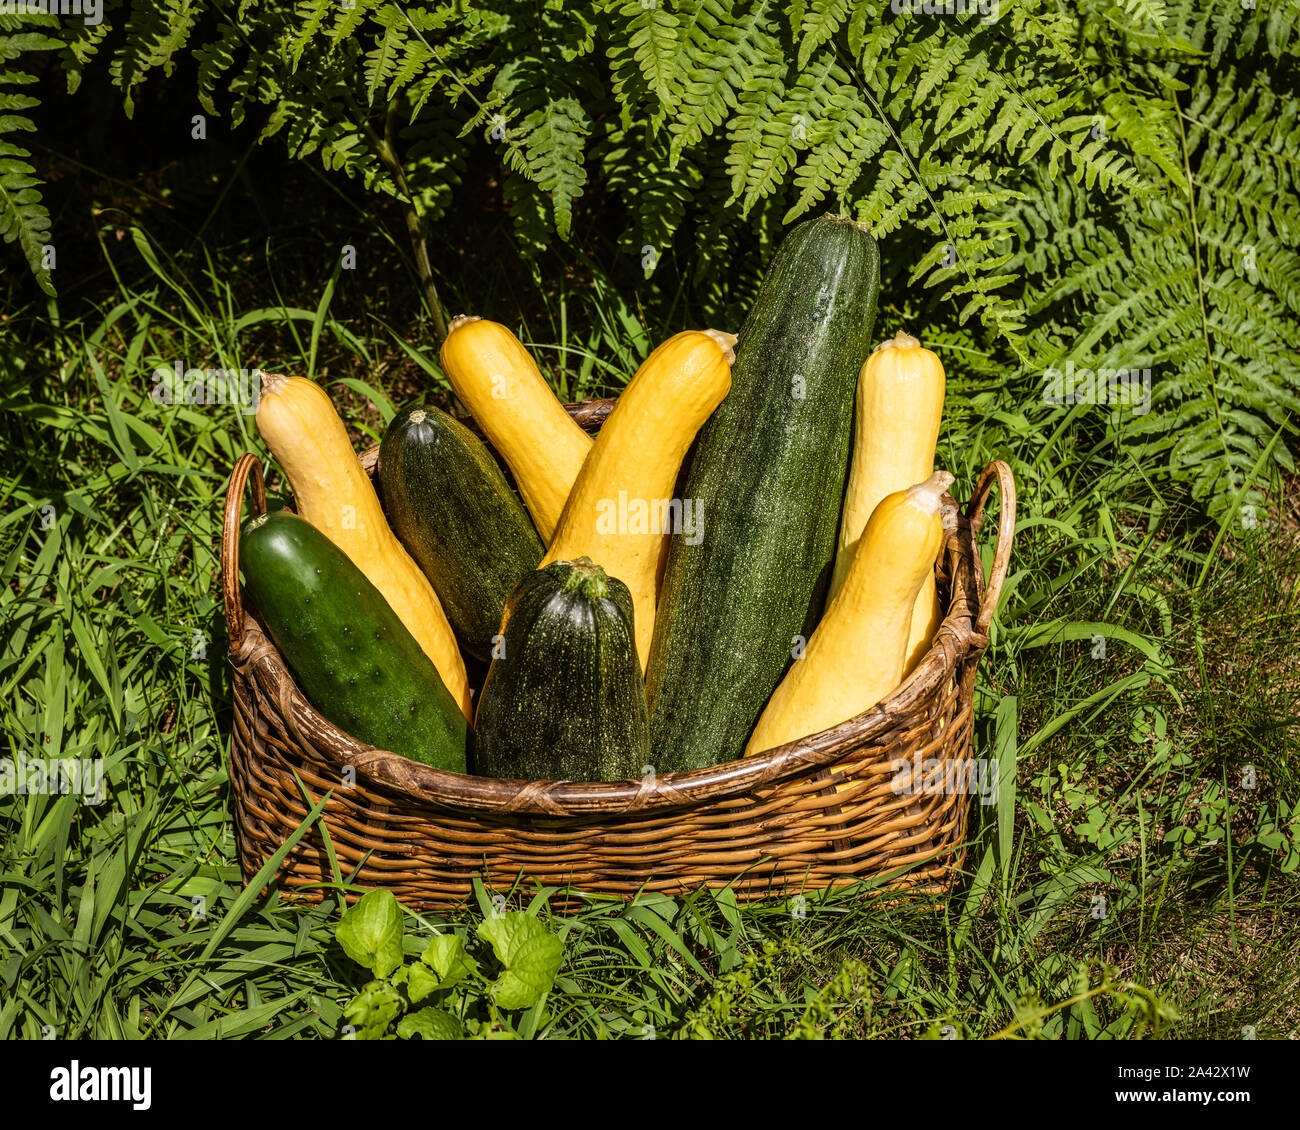 Zucca gialla matura e zucchine verdi appena raccolte dal giardino, disposte in un cesto di vimini adagiato in erba verde di fronte alle felci verdi Foto Stock